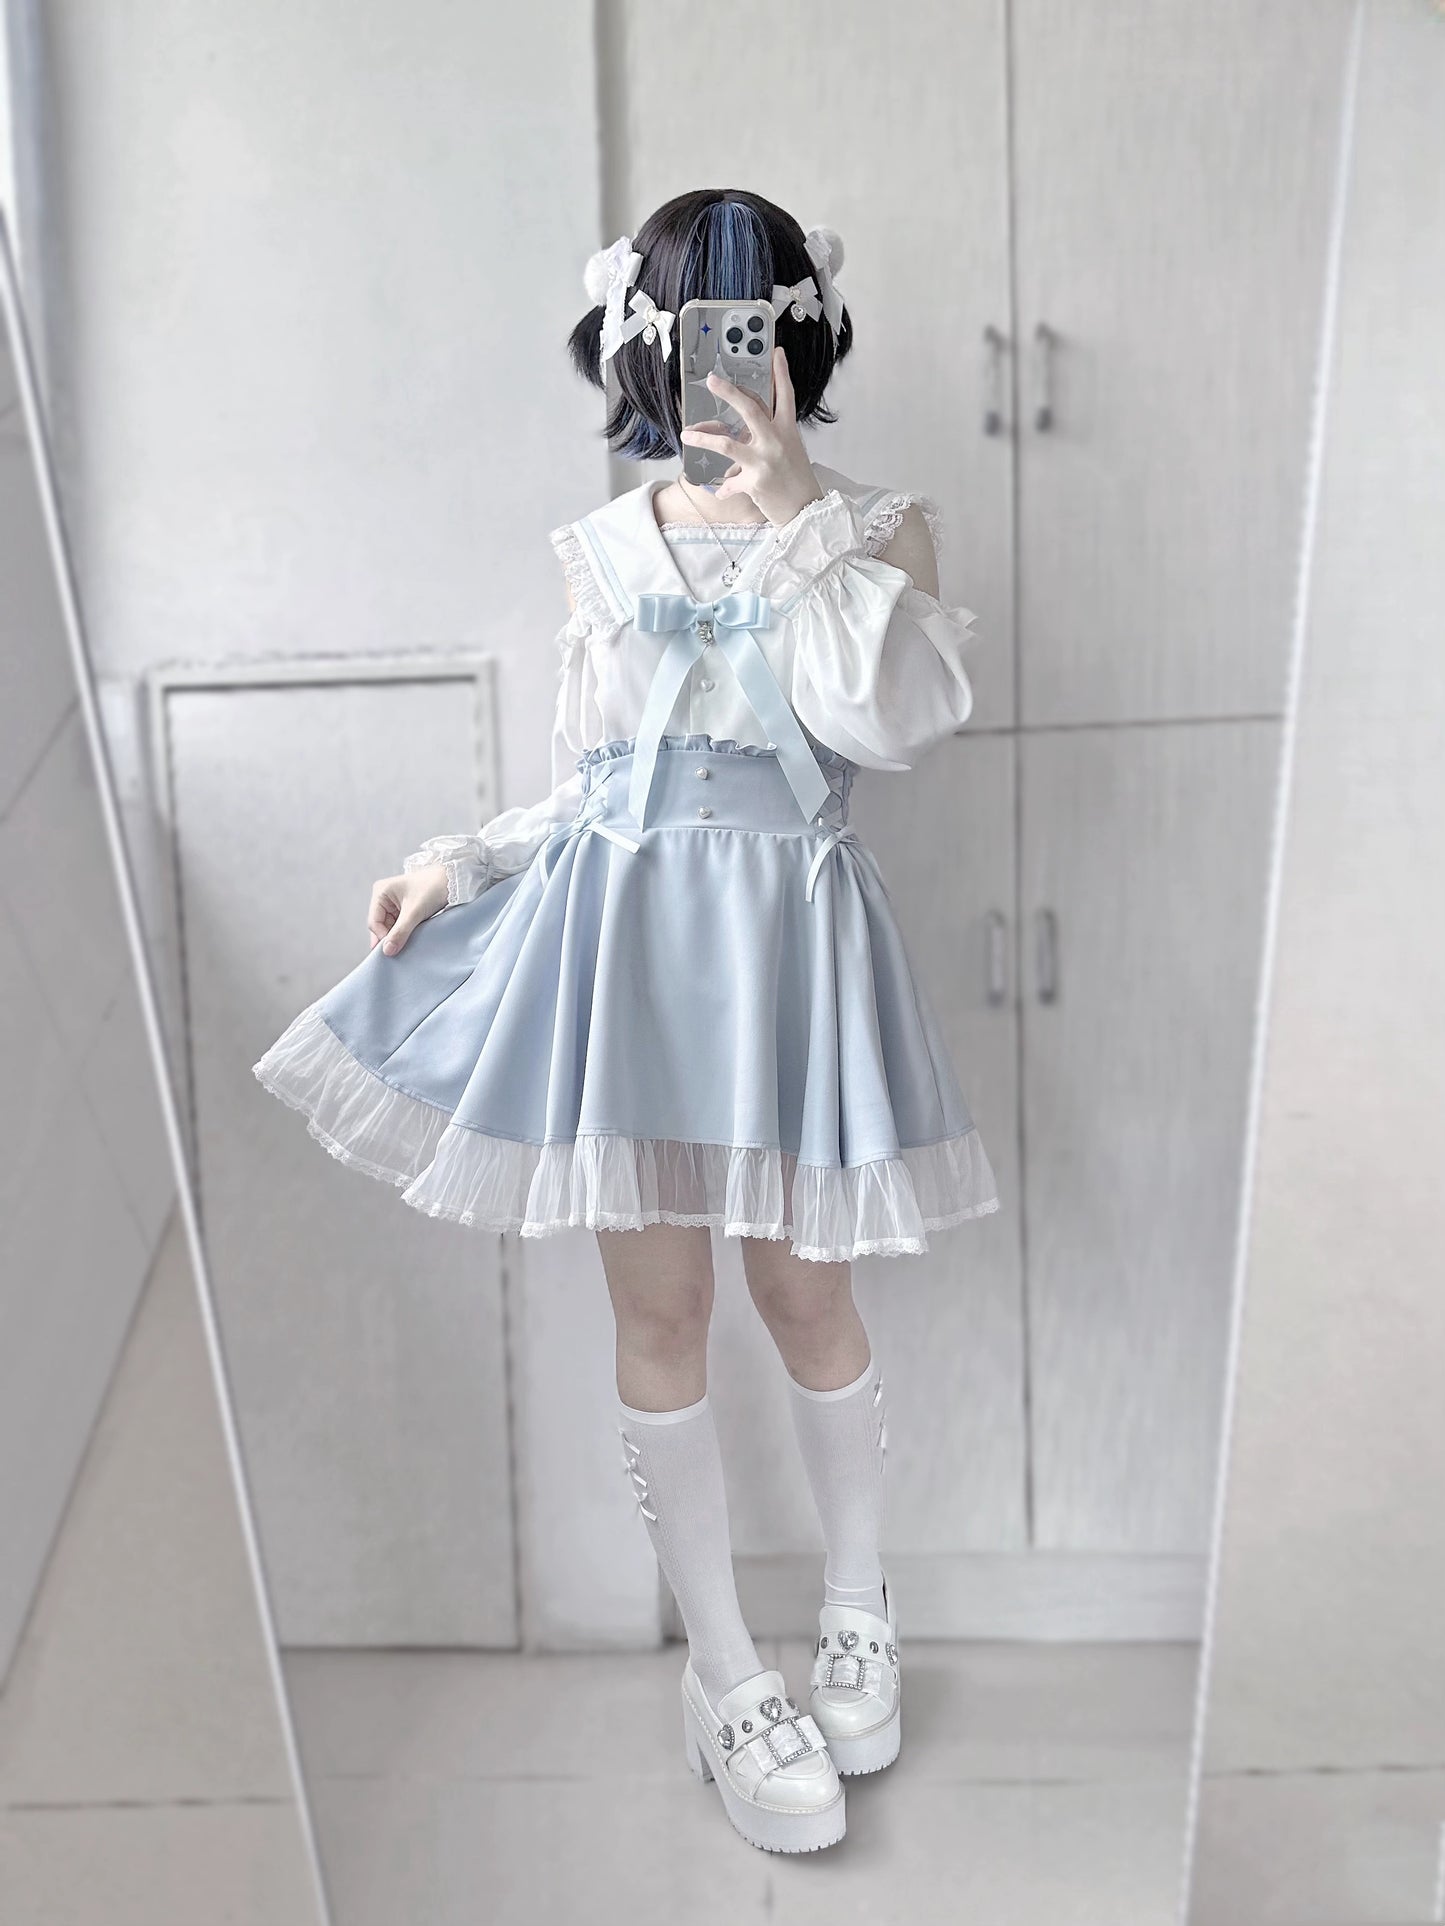 Jirai Kei Skirt Sweet Pink Blue Skirt With Flounce Hem 35800:504112